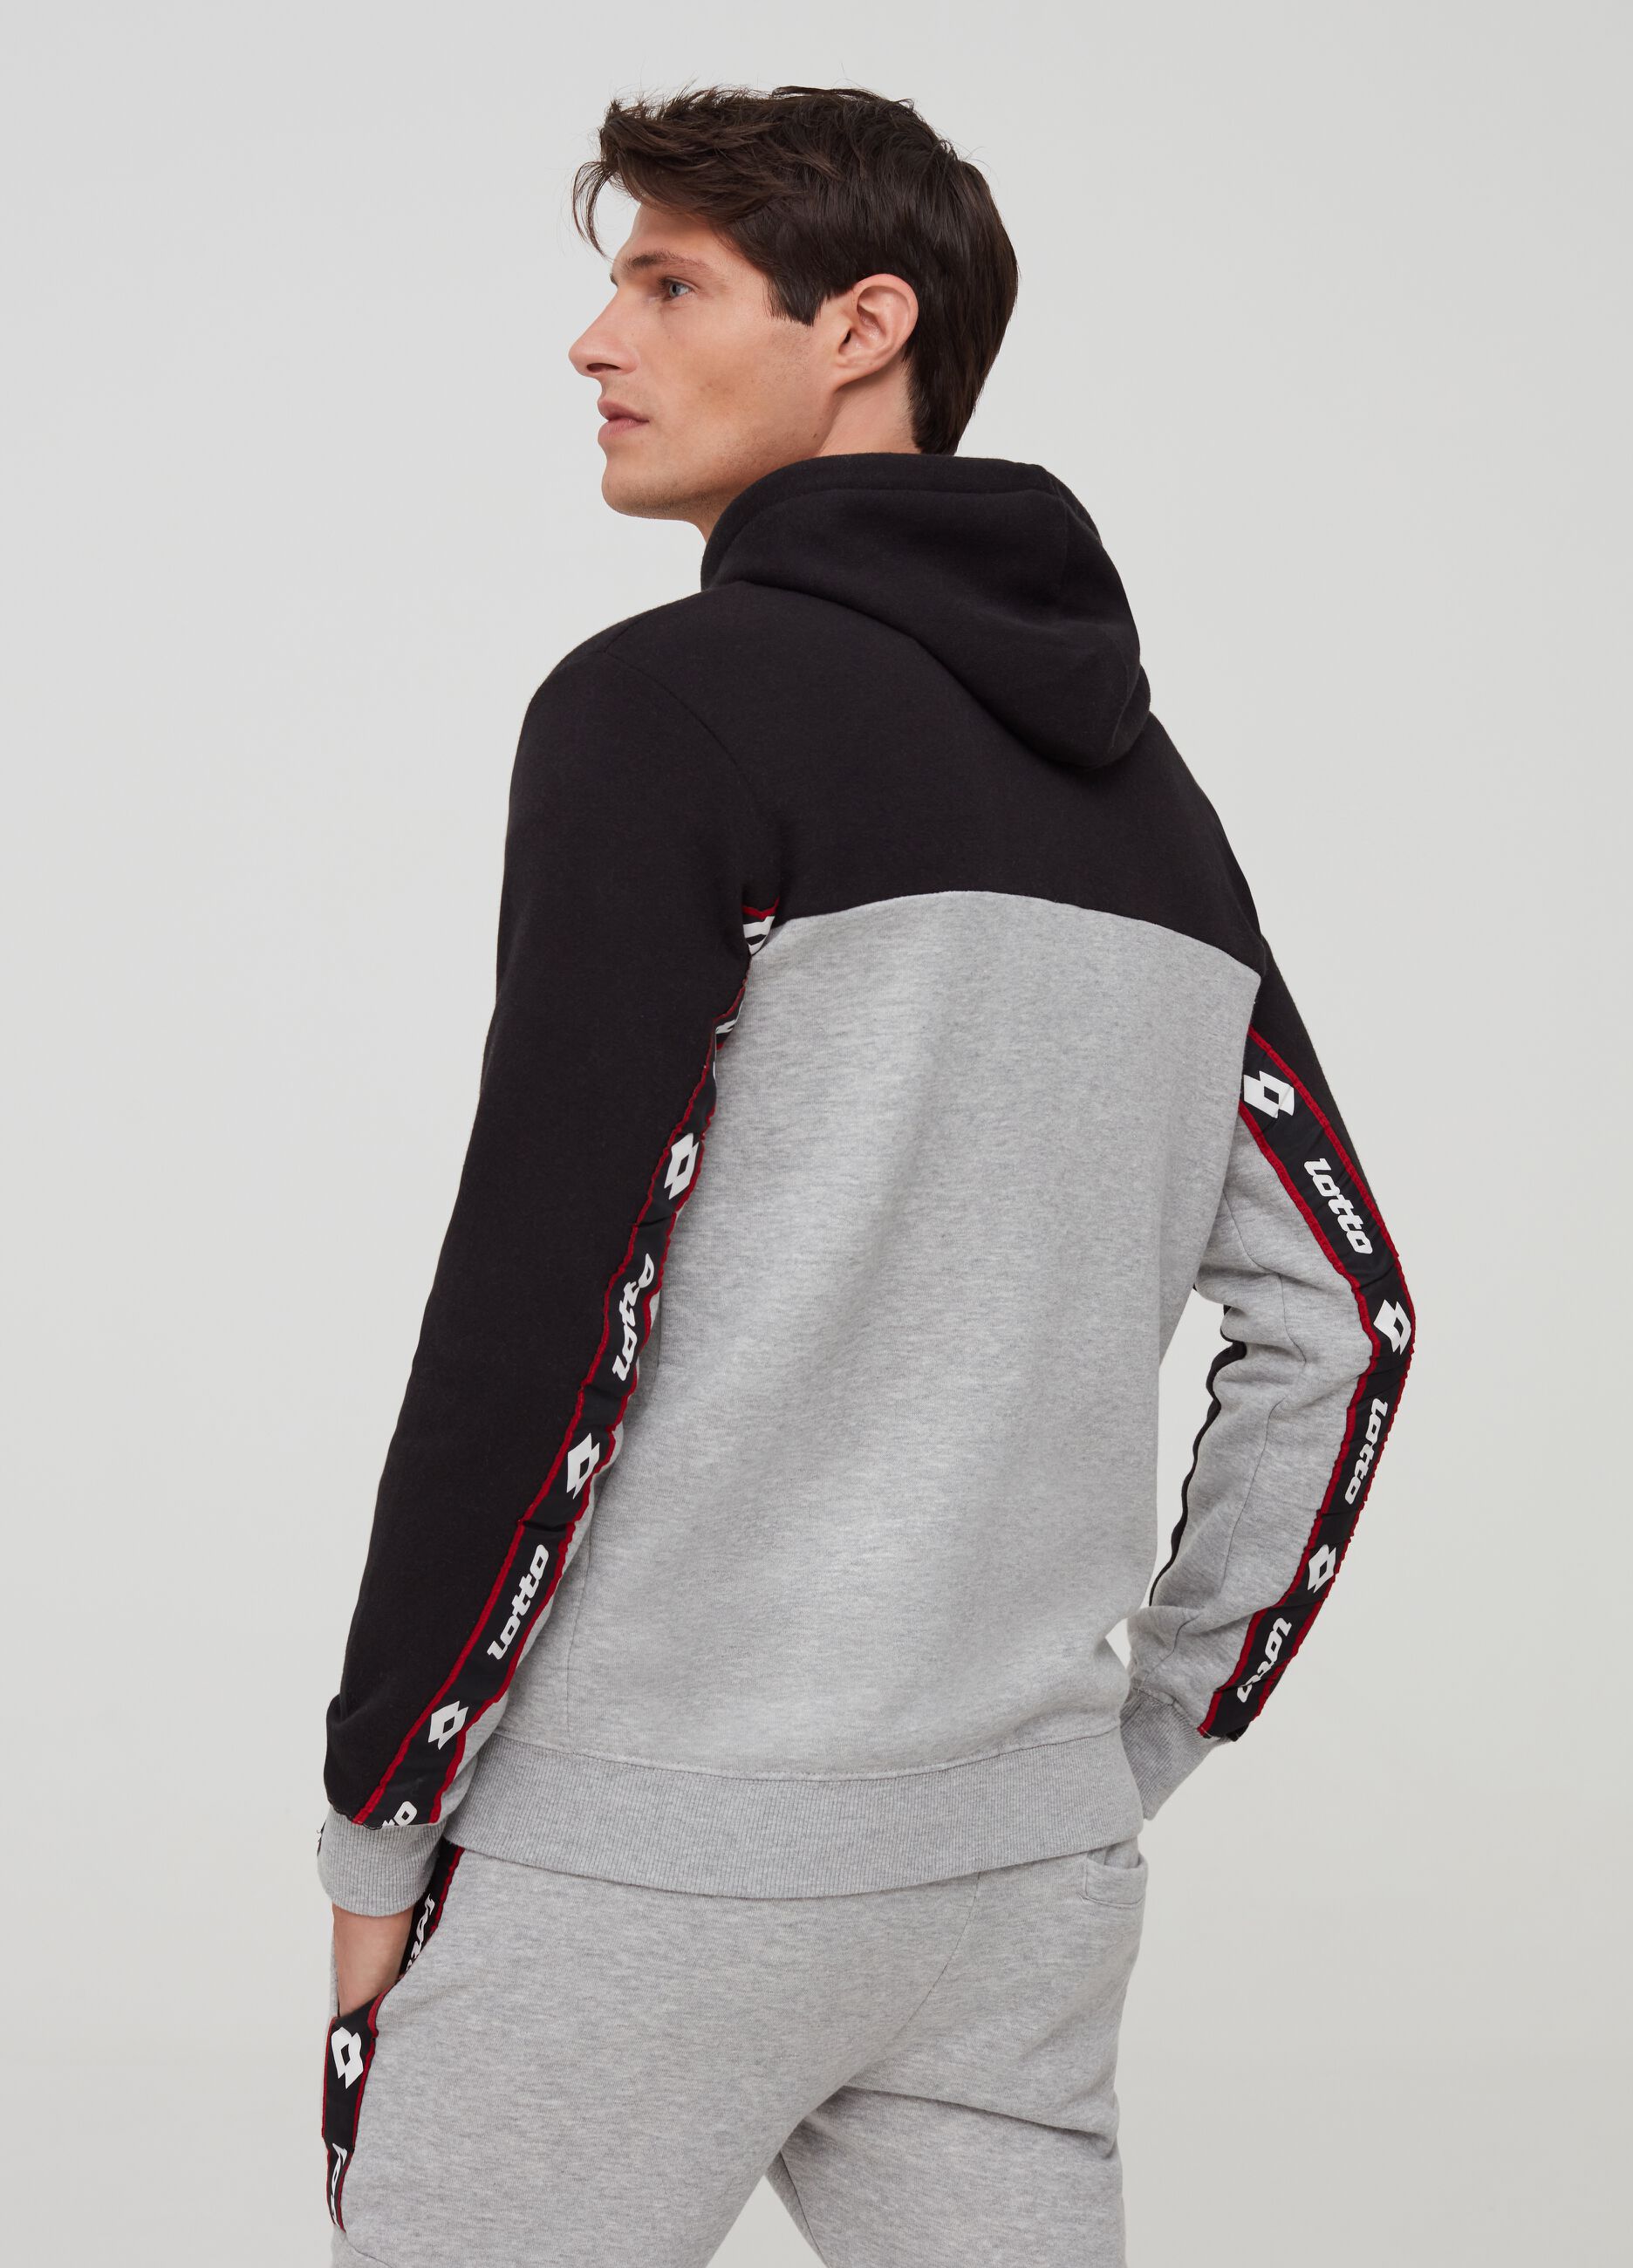 Sweatshirt with hood, zip and Lotto print